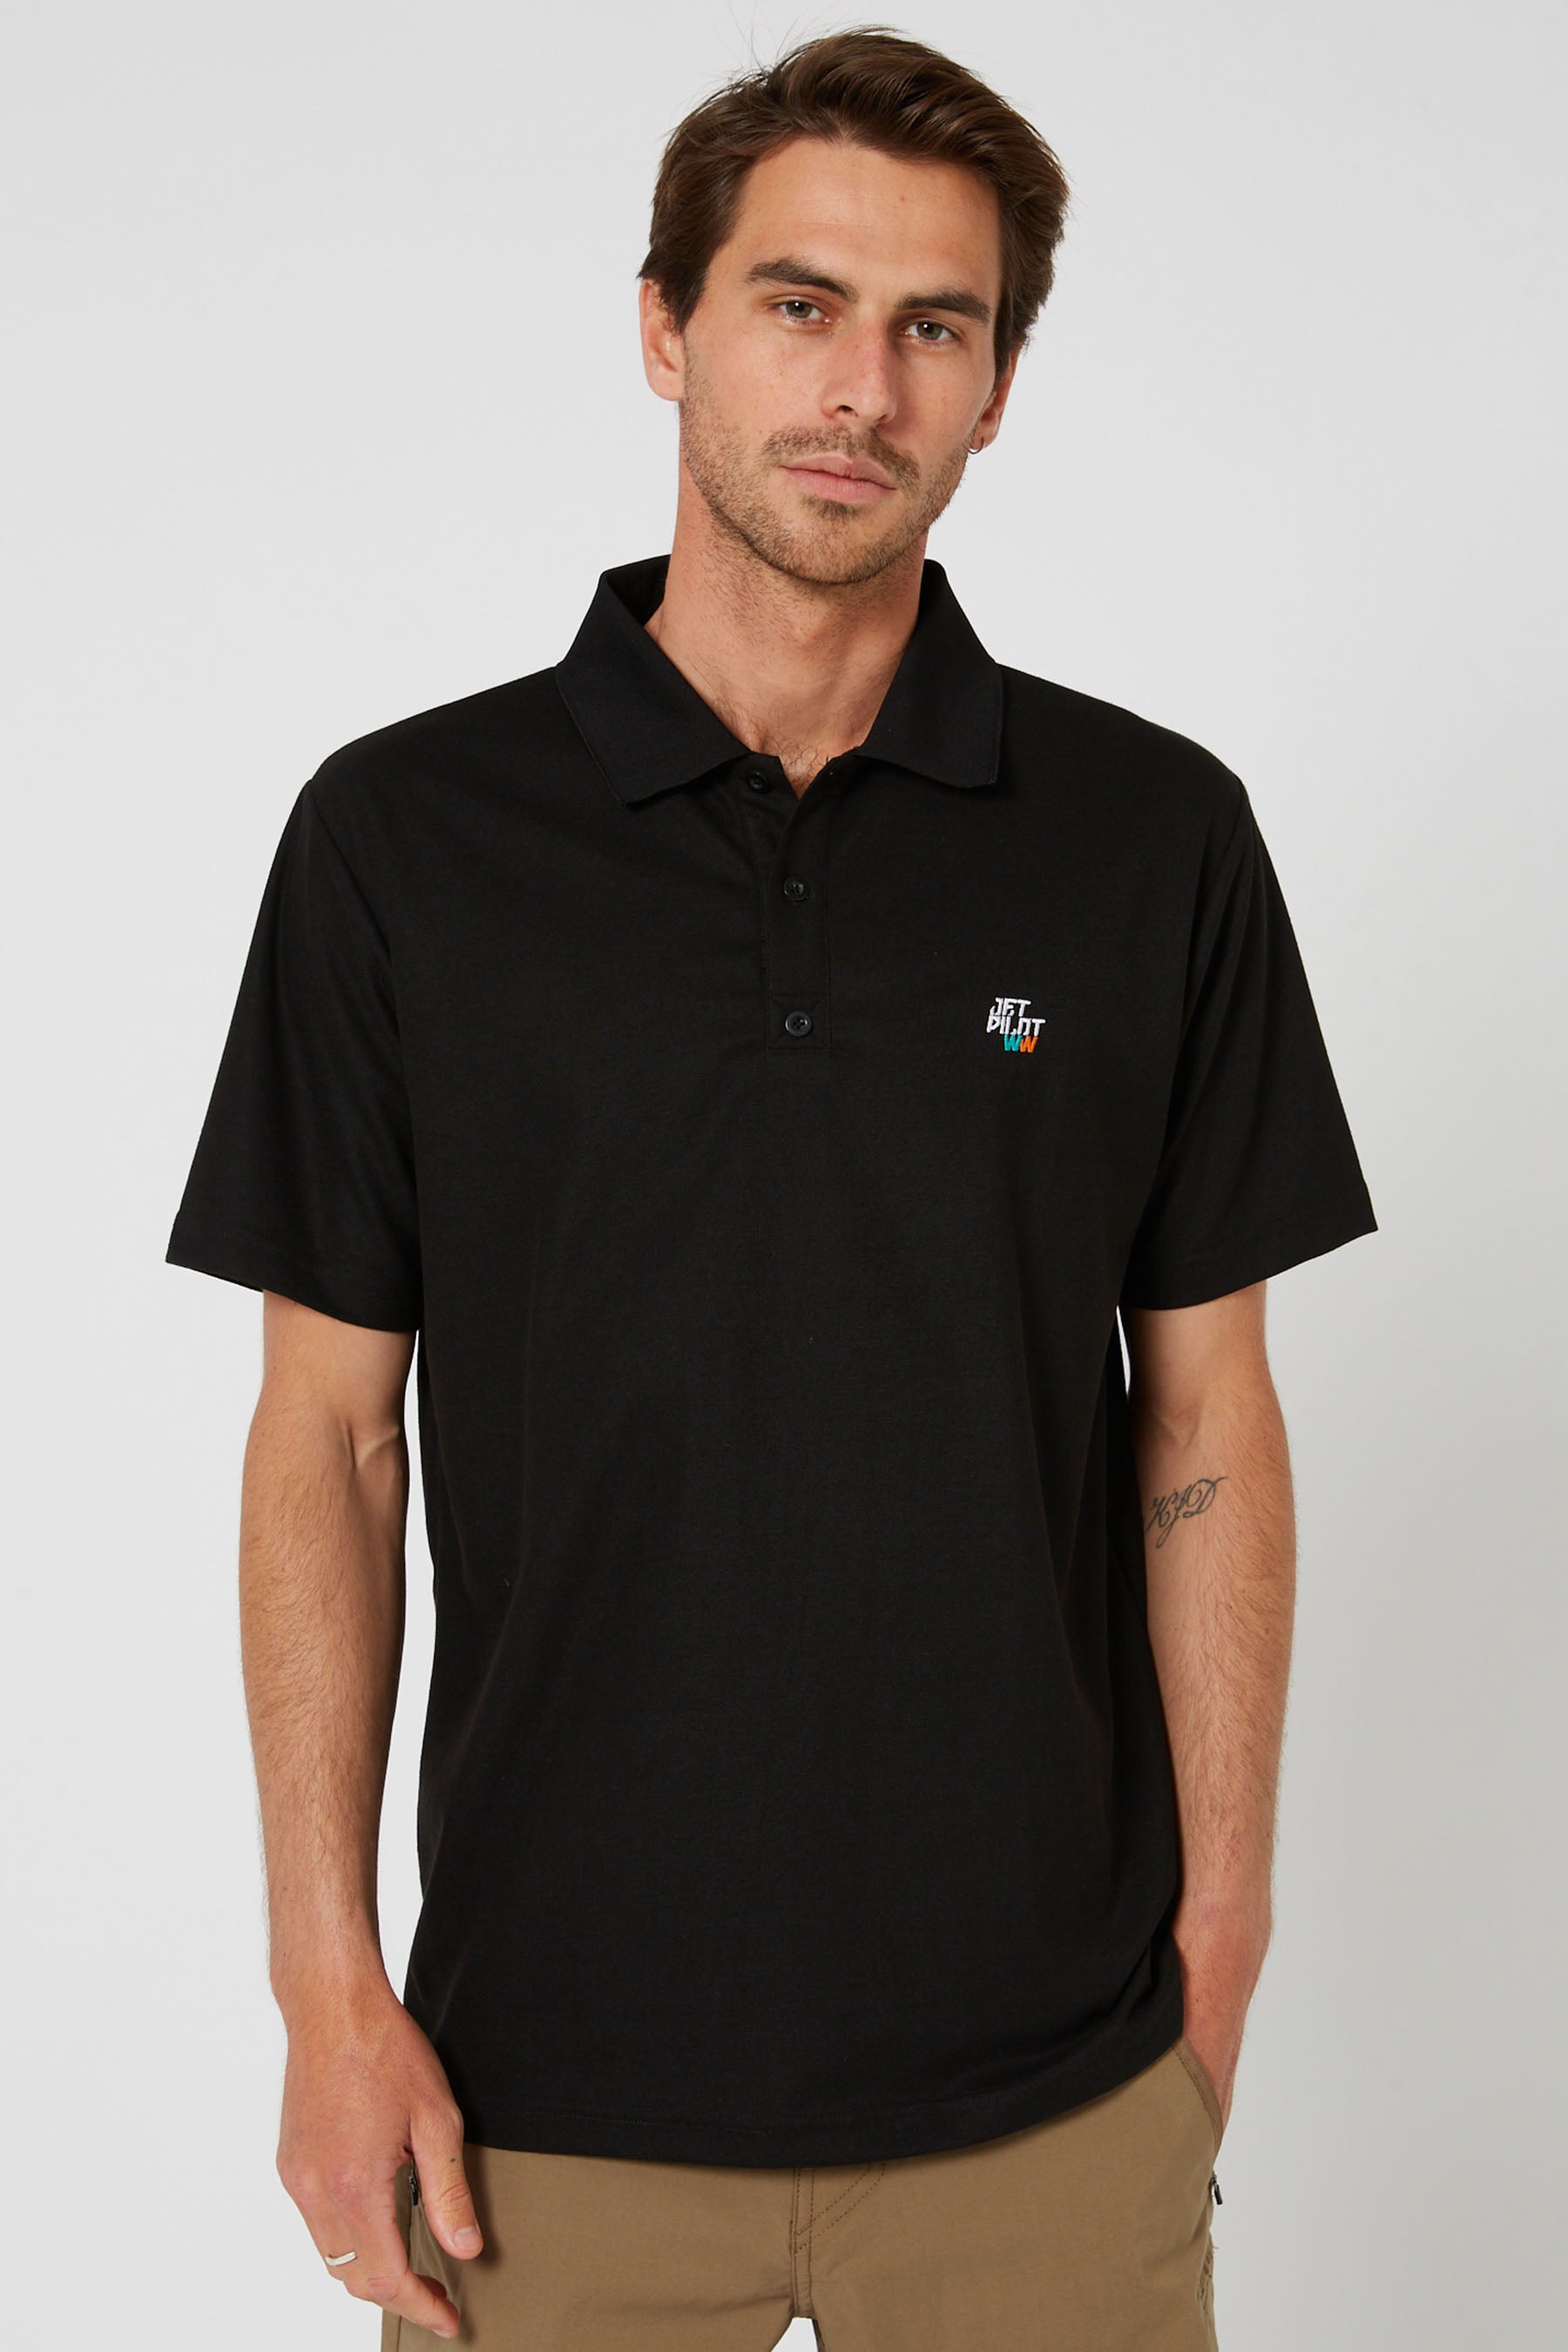 Jetpilot Polo Mens S/S Shirt - Black